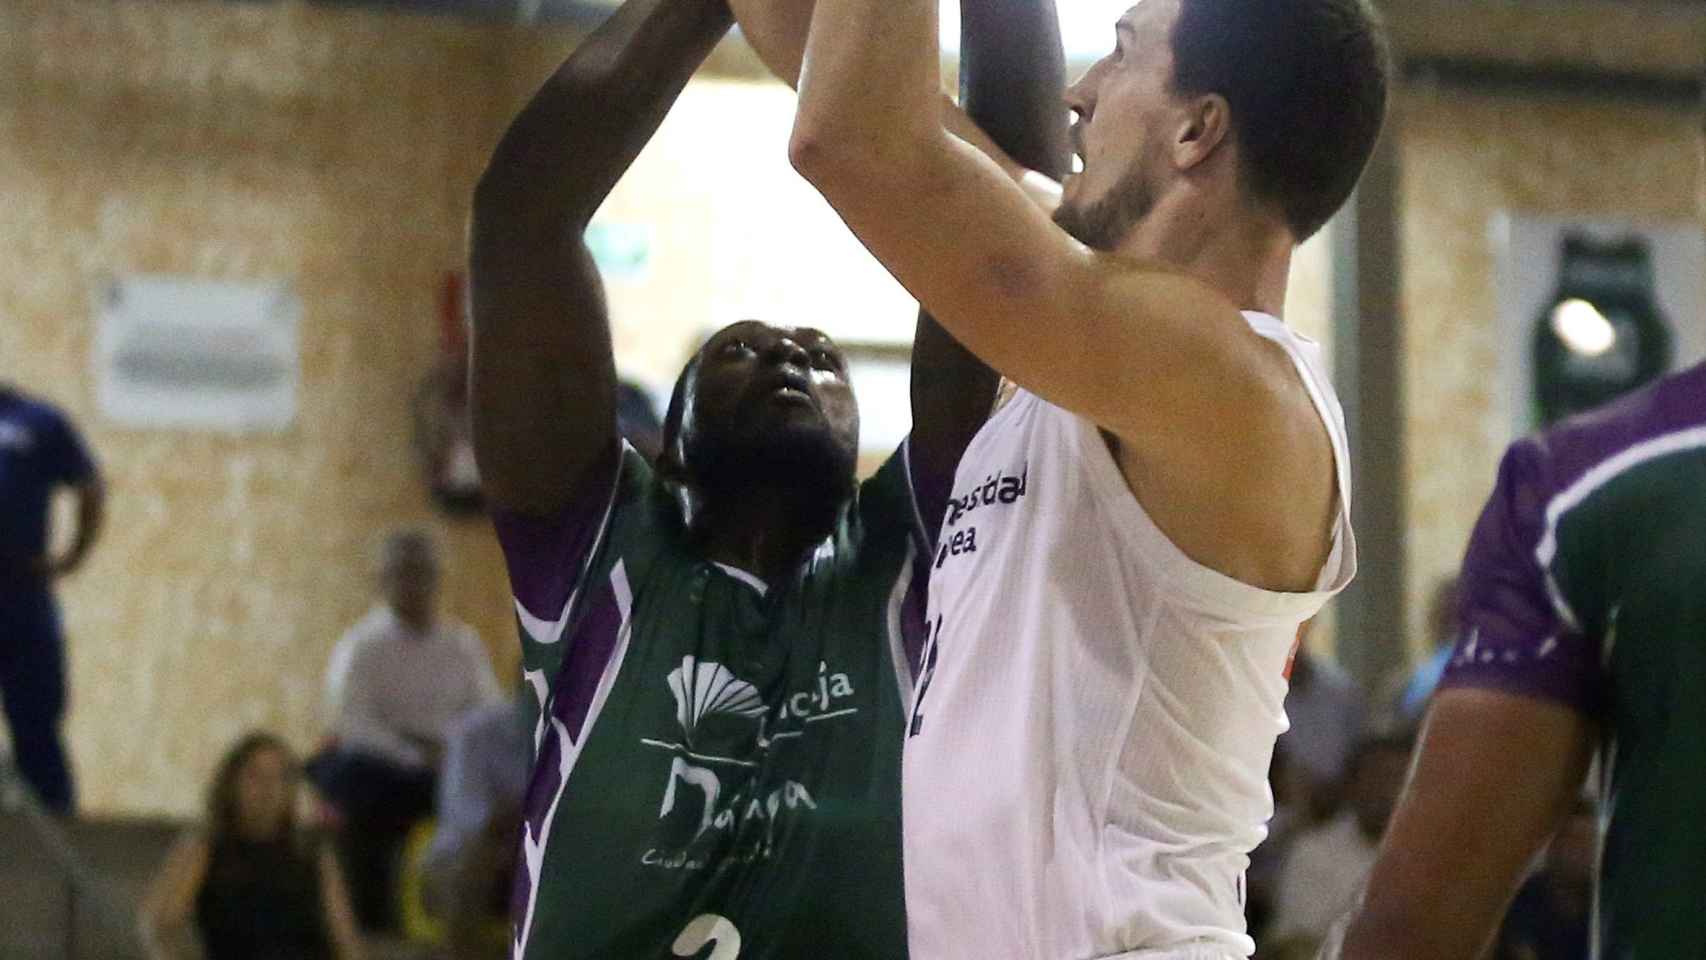 Kuzmic lanza a canasta durante la final del VIII Torneo Internacional de baloncesto Costa del Sol